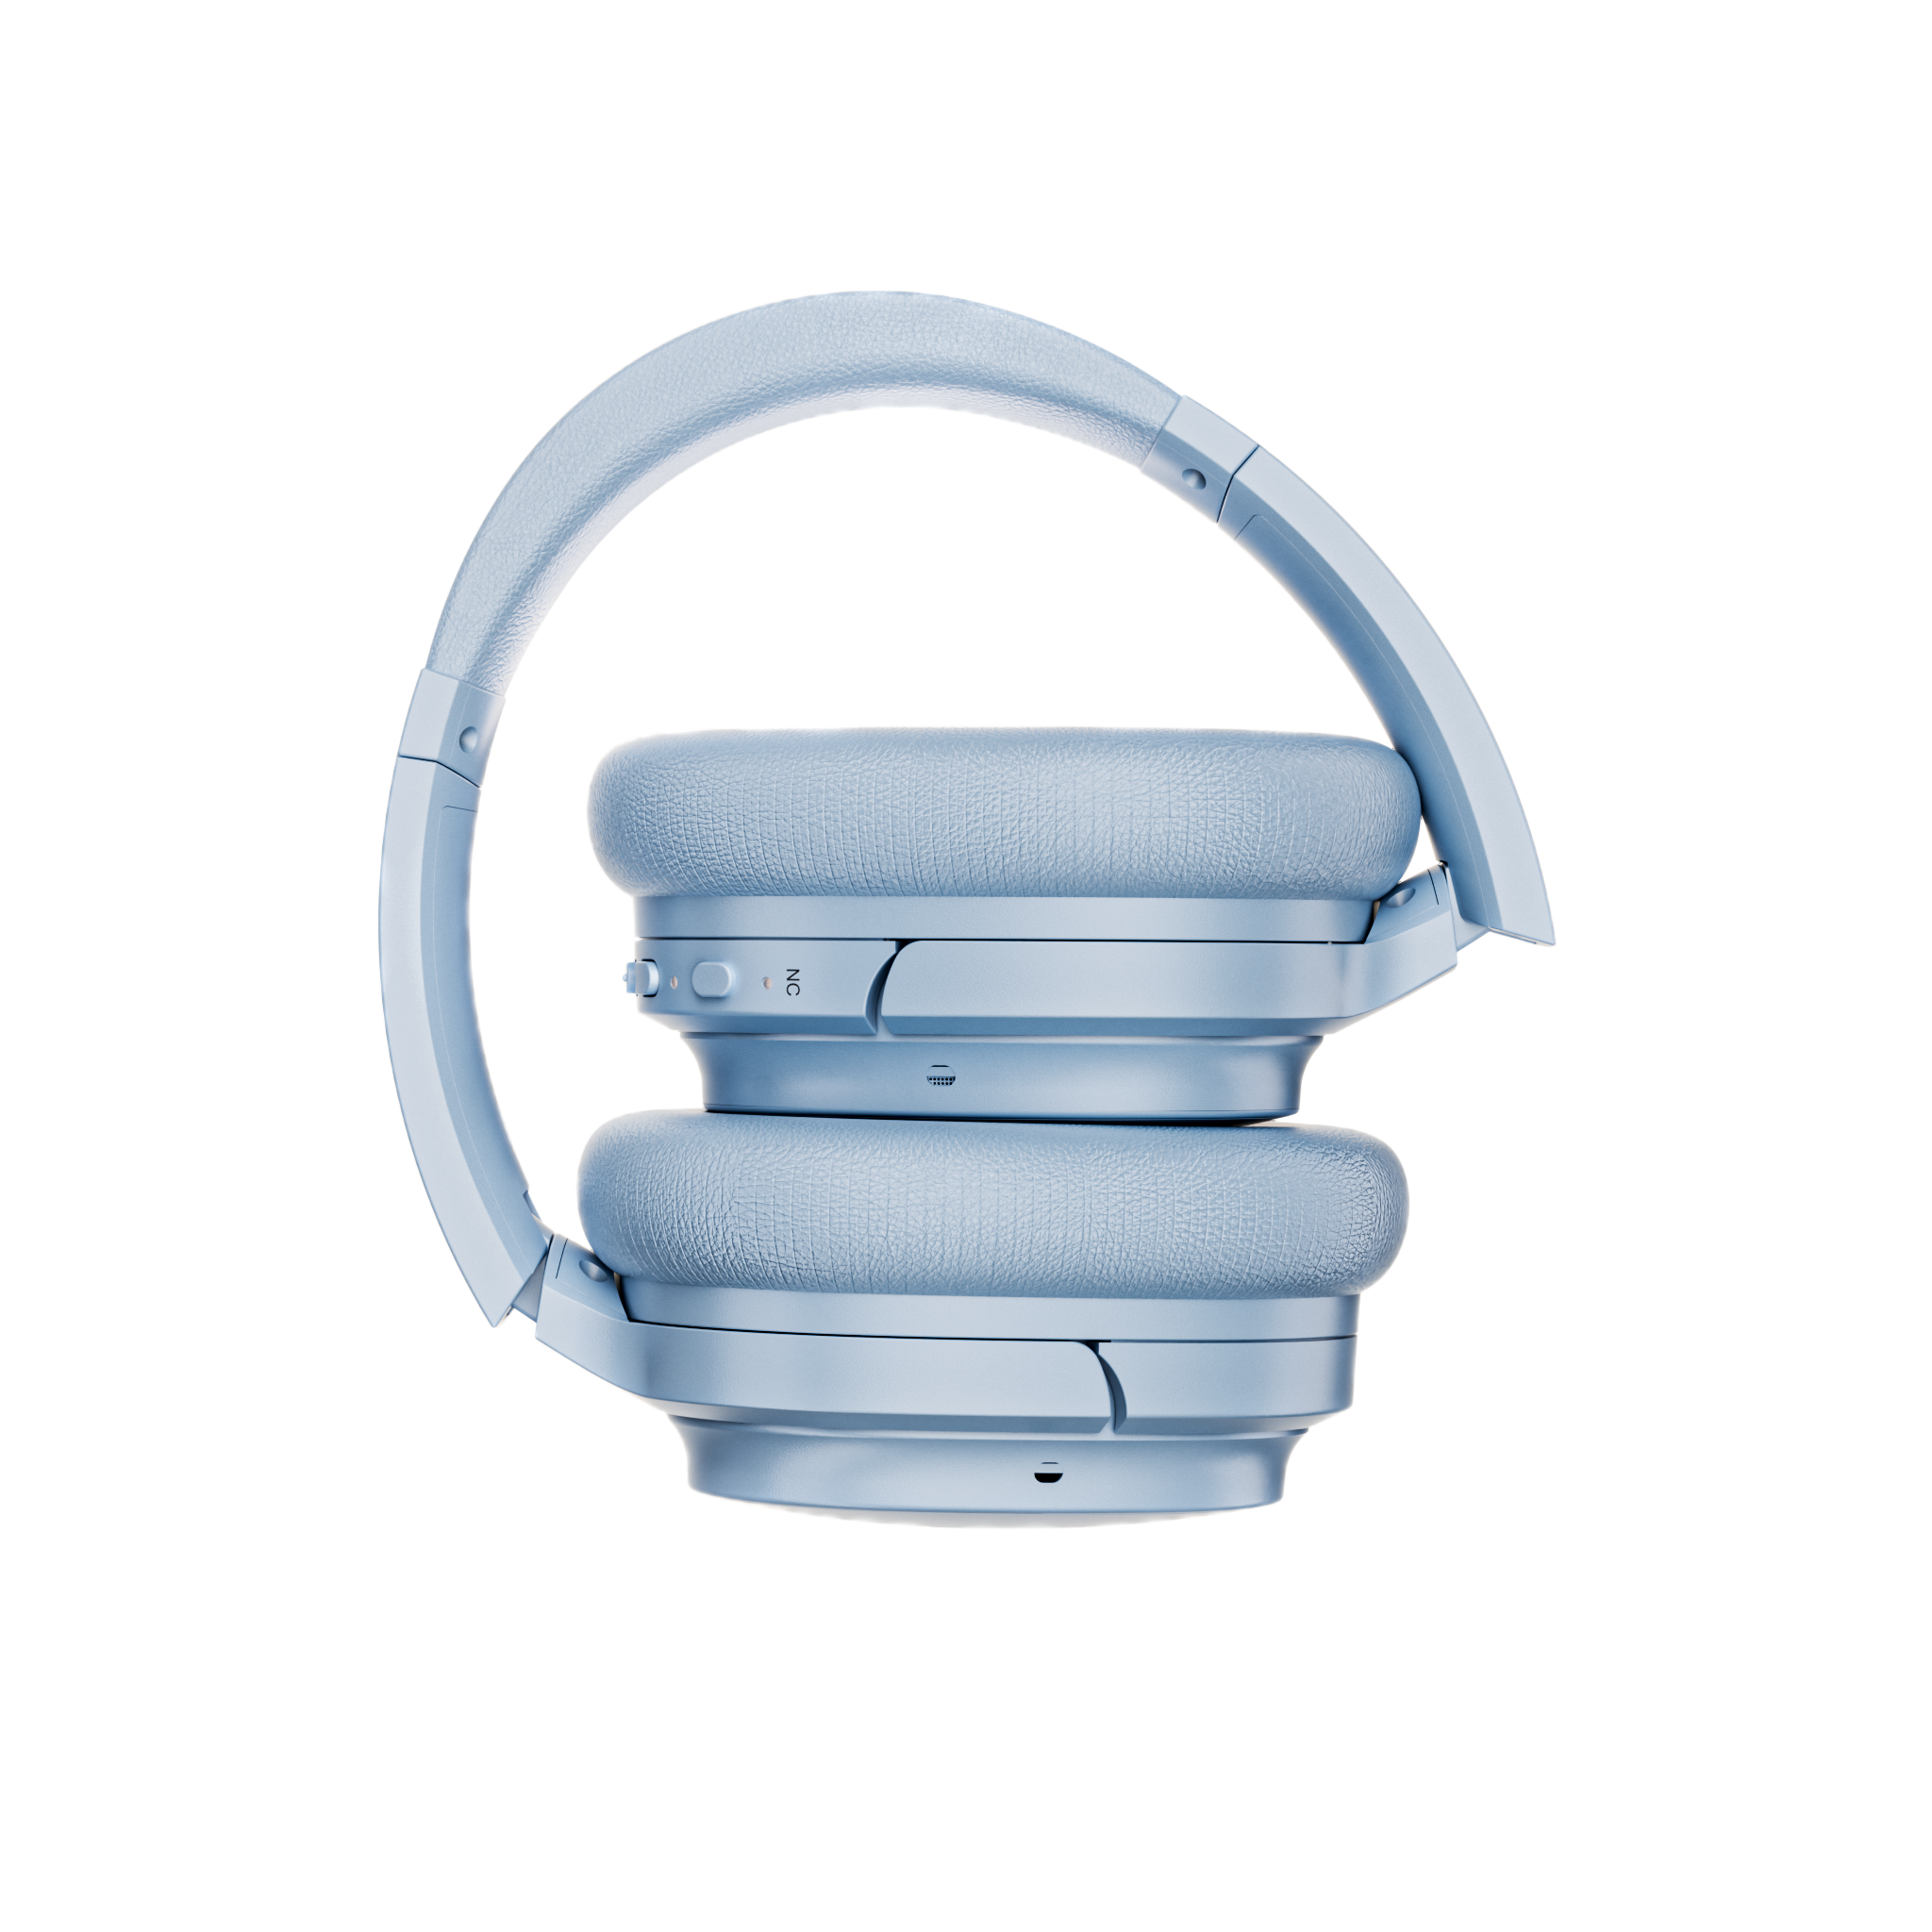 CL01 -Clarity Headphones